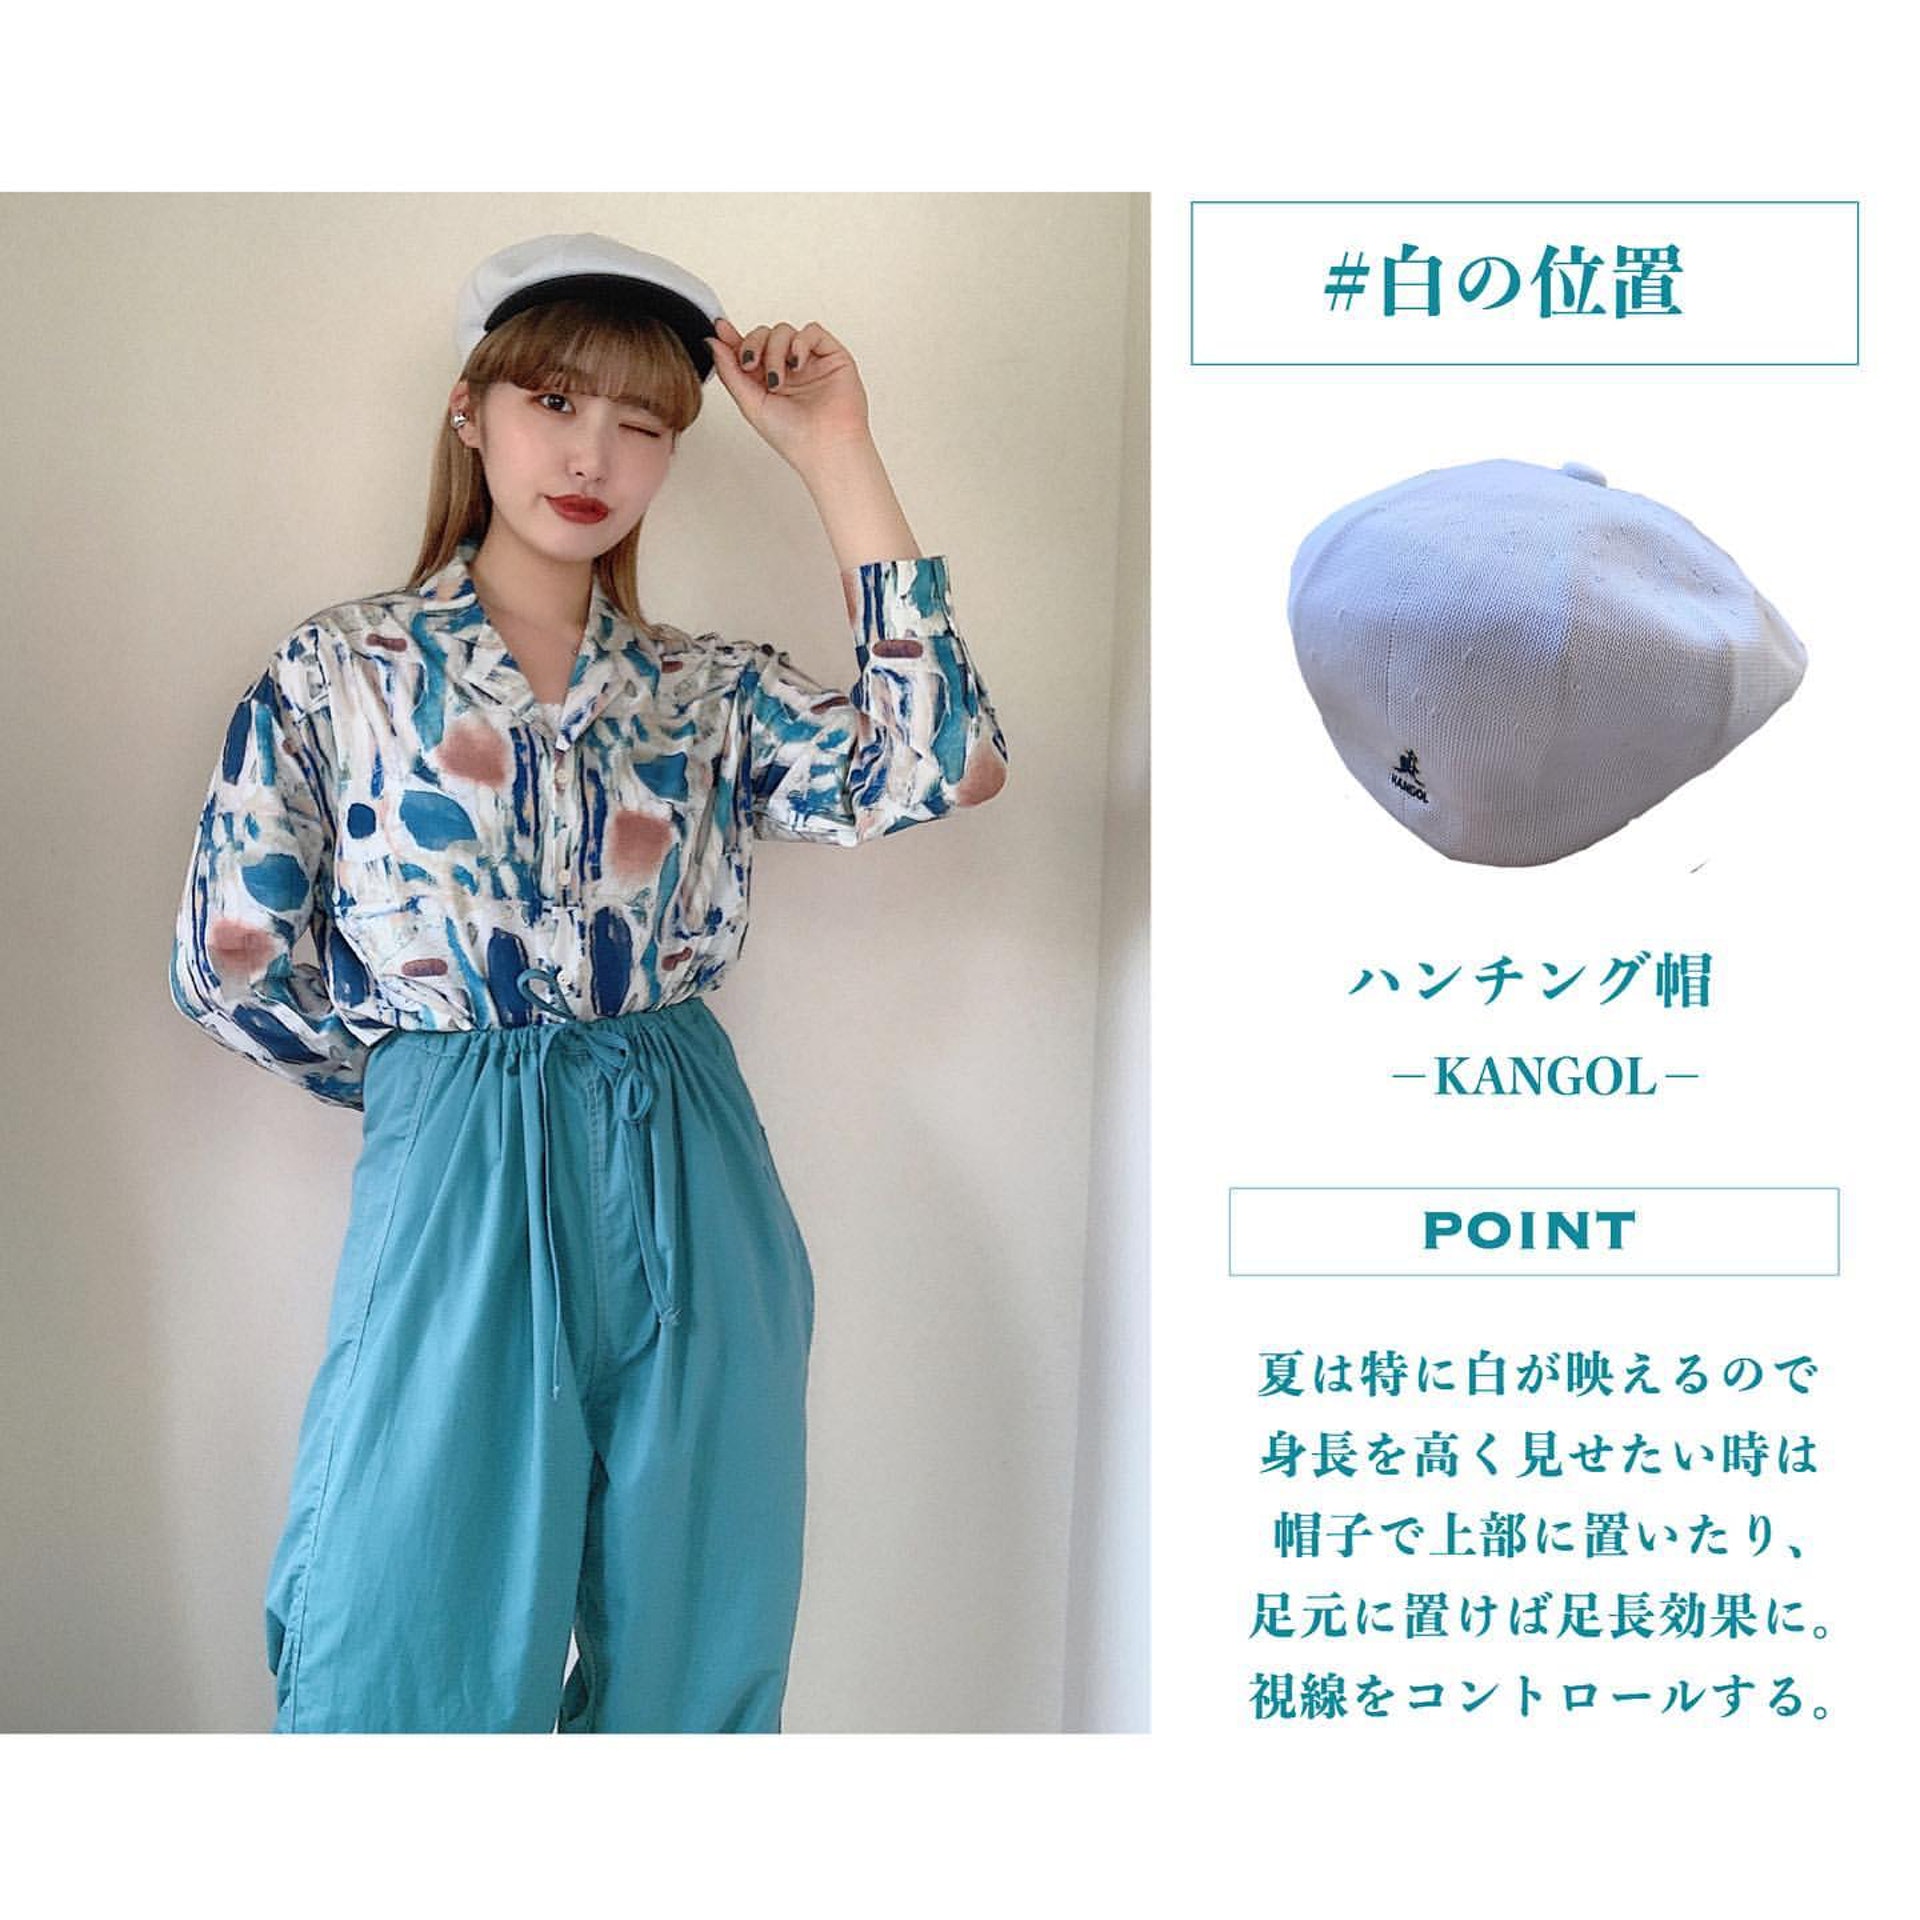 Chaki選擇以湖水藍長褲配襯印花圖案恤衫，並將恤衫攝入下身褲裝內，拉長下身比例；亦戴上英國品牌Kangol帽，感覺更復古。(__nmsk13@Instagram)